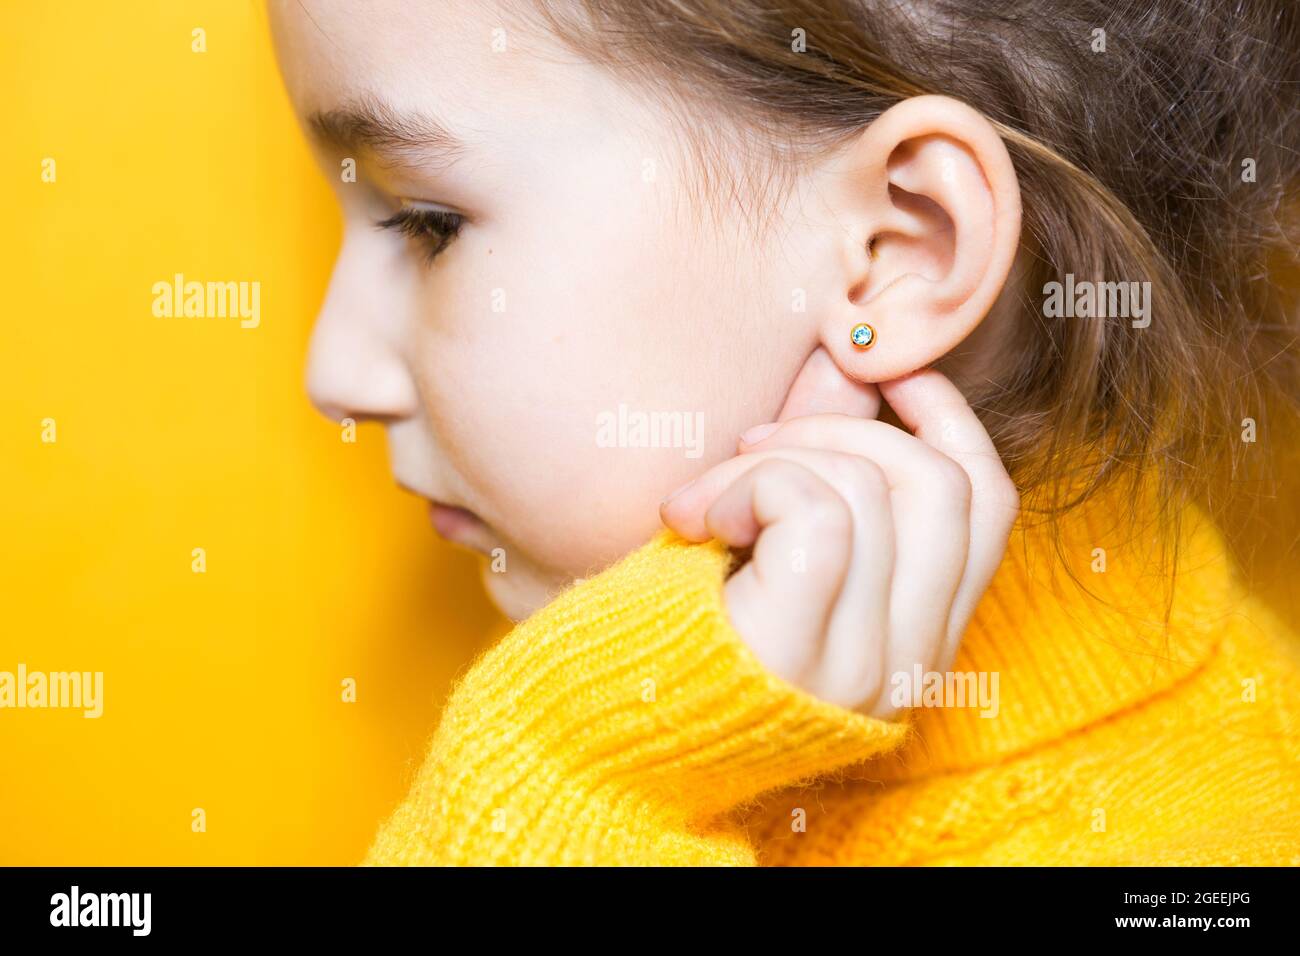 Ohrpiercing bei einem Kind - ein Mädchen zeigt einen Ohrring in ihrem Ohr aus einer medizinischen Legierung. Gelber Hintergrund, Porträt eines Mädchens im Profil. Stockfoto